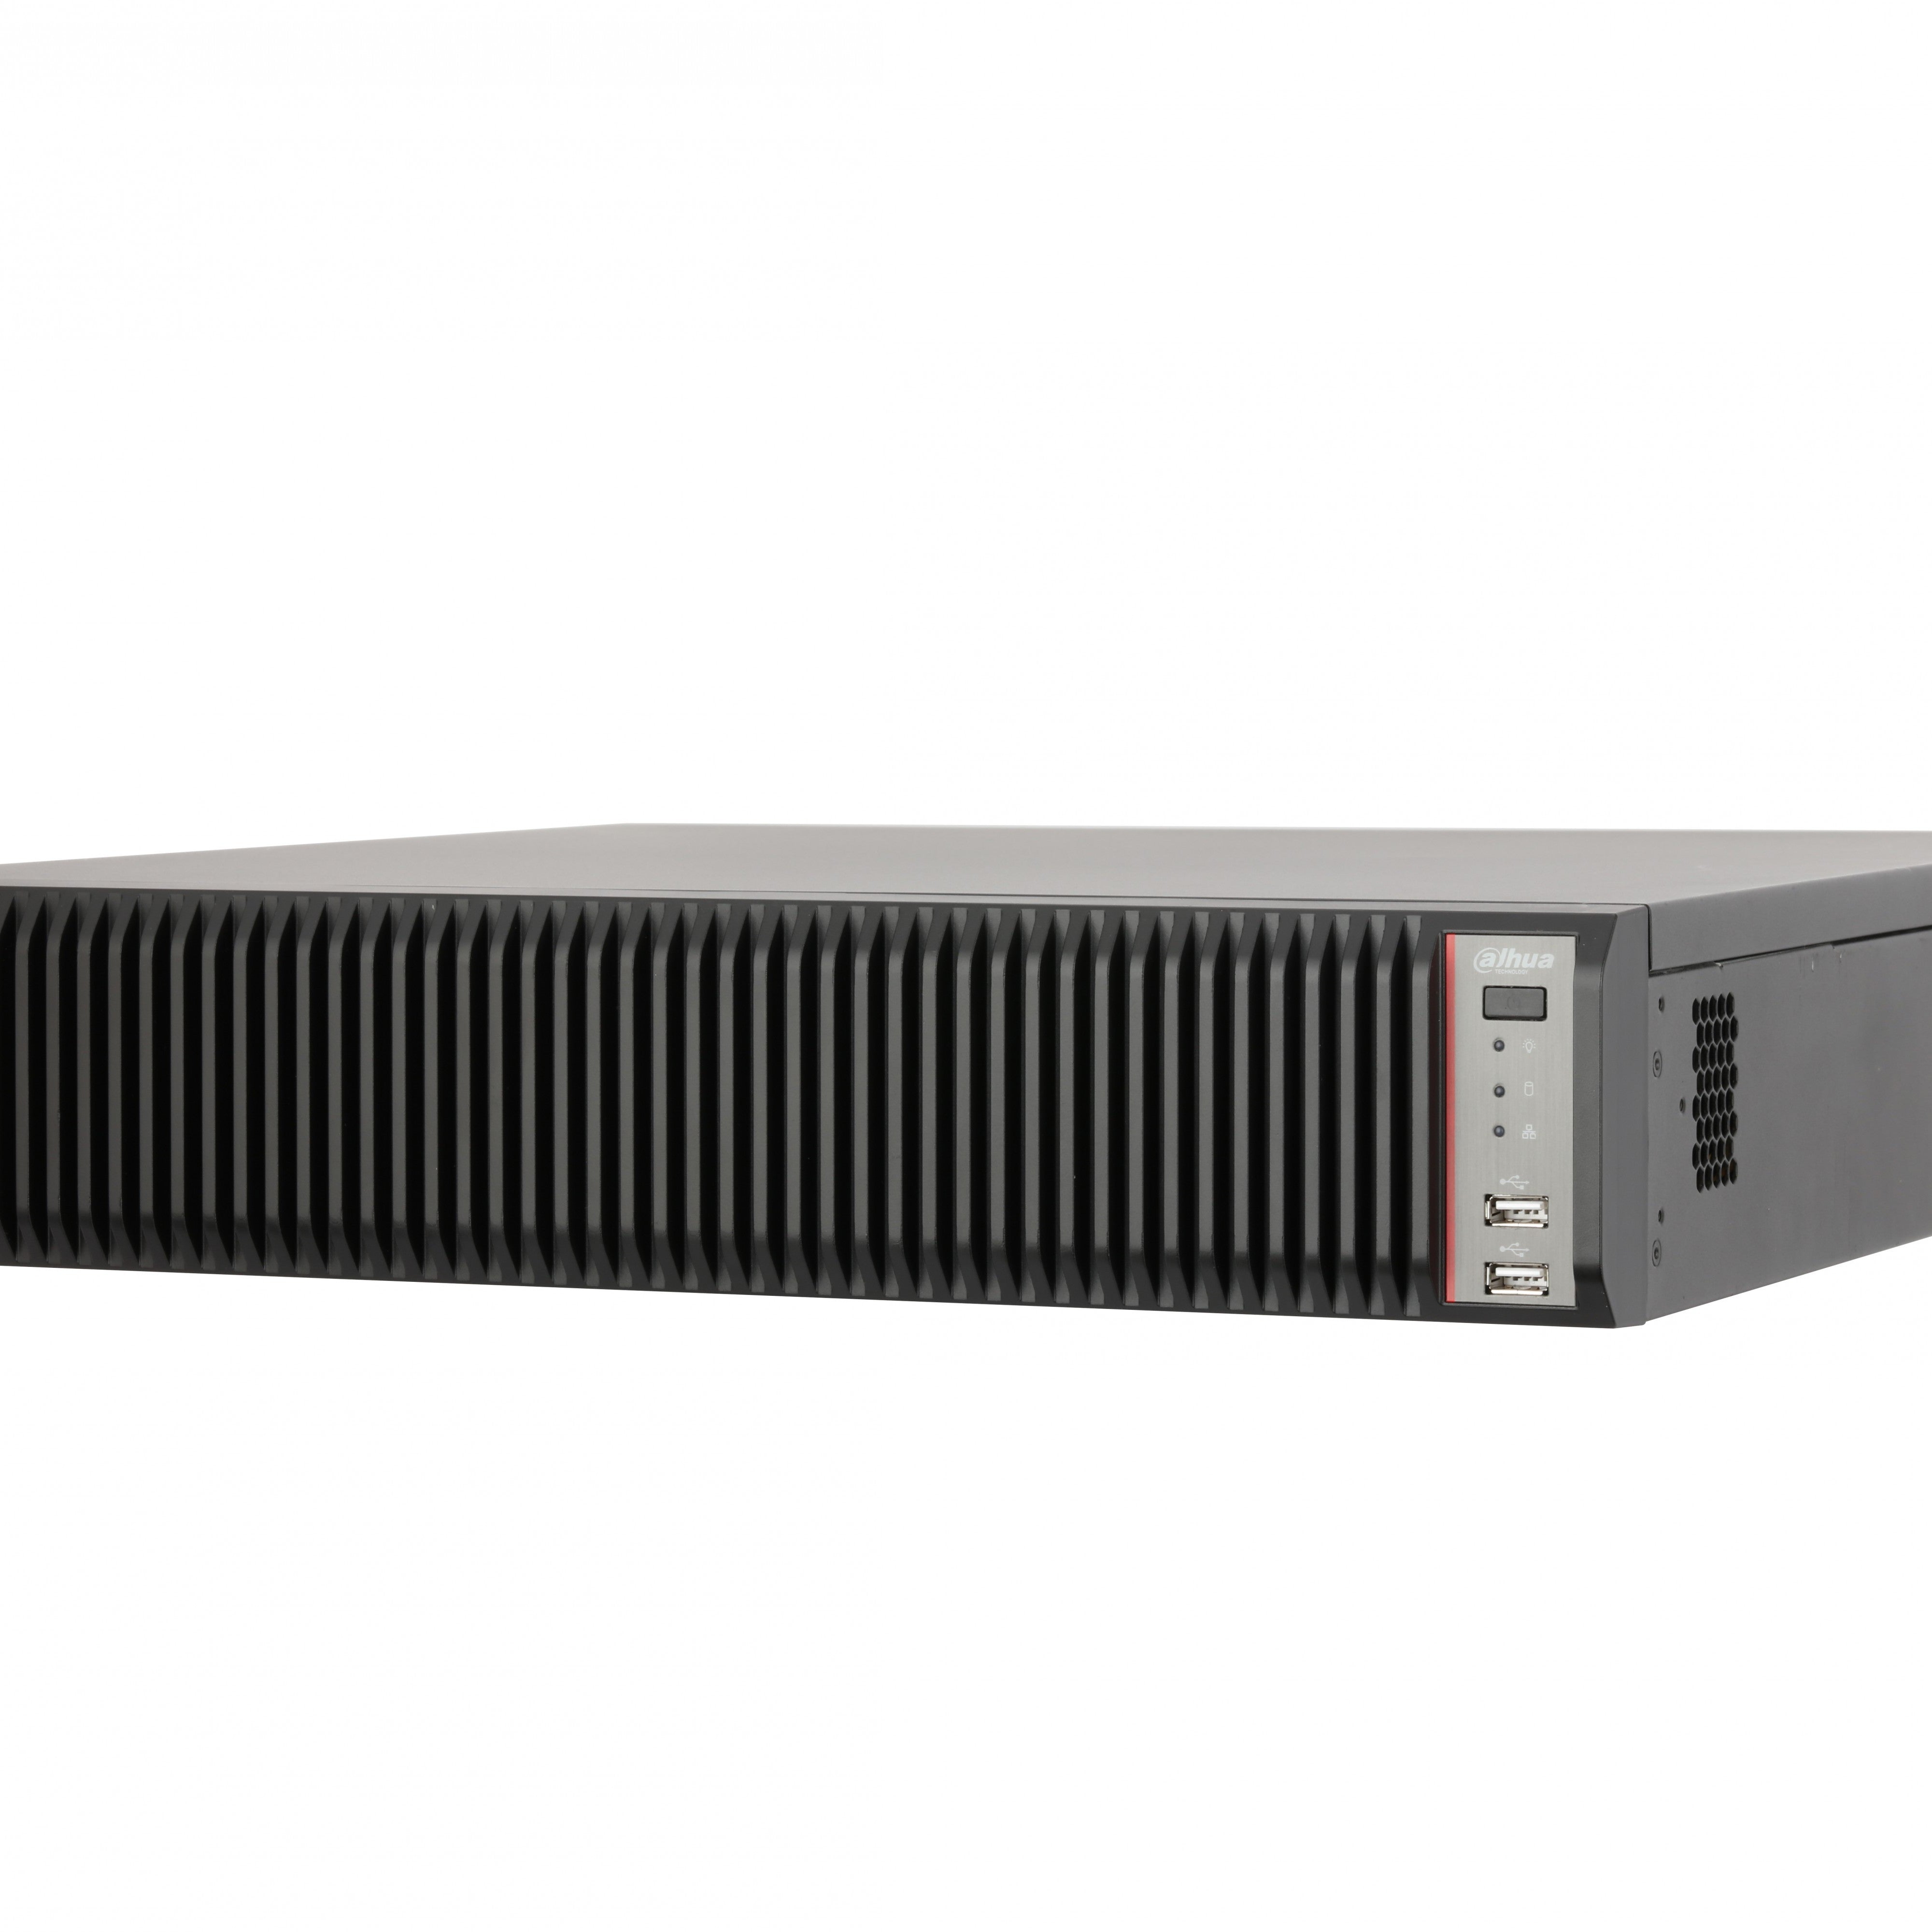 DAHUA IVSS7108-1I 128CH 2U Intelligent Video Surveillance Server